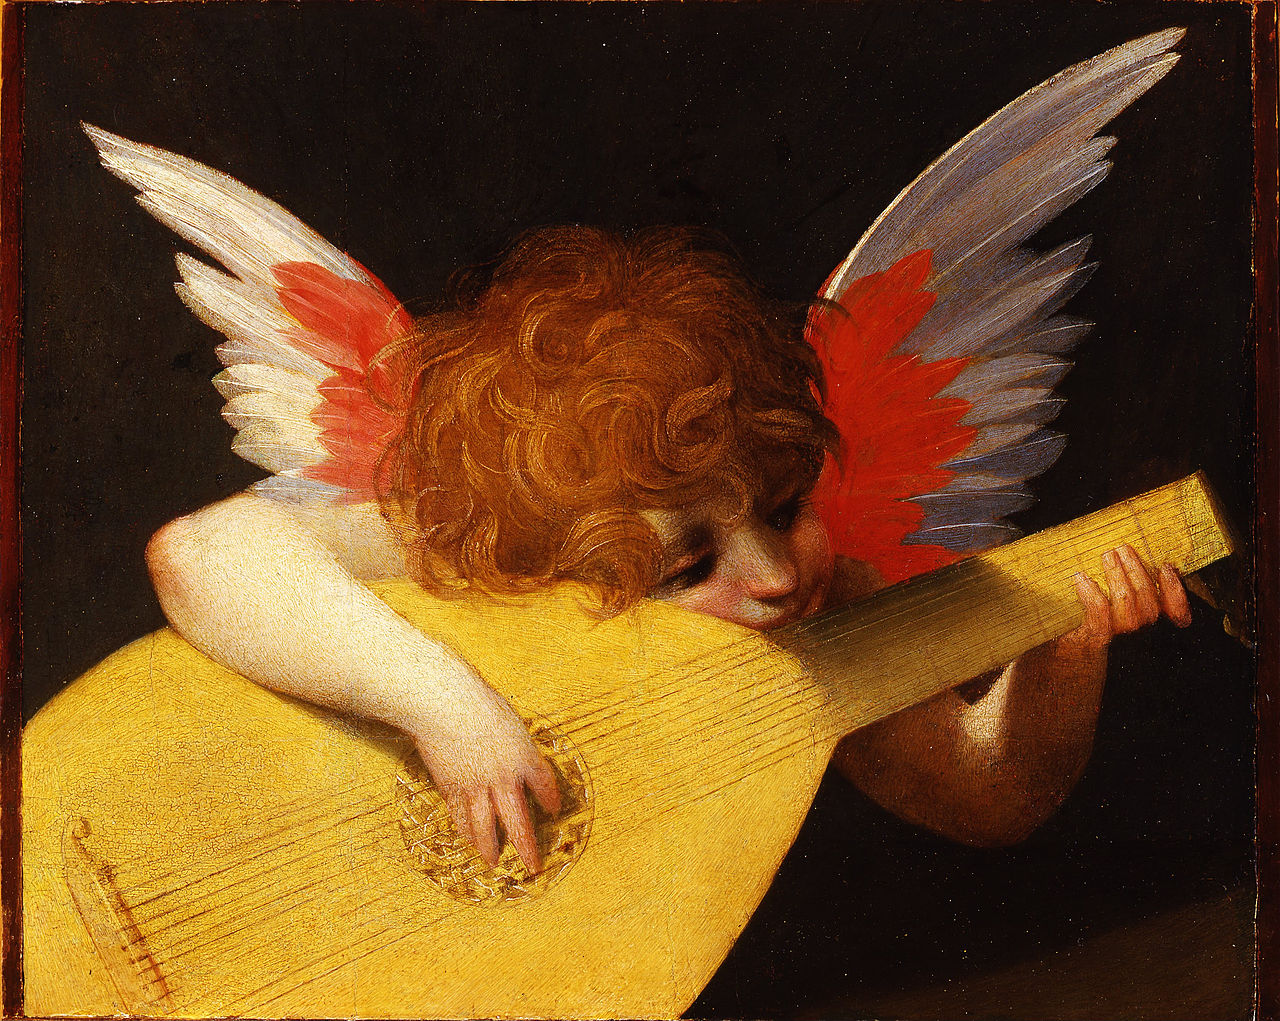 Musical Angel by Rosso Fiorentino - 1522 - 141 x 172 cm Galleria degli Uffizi